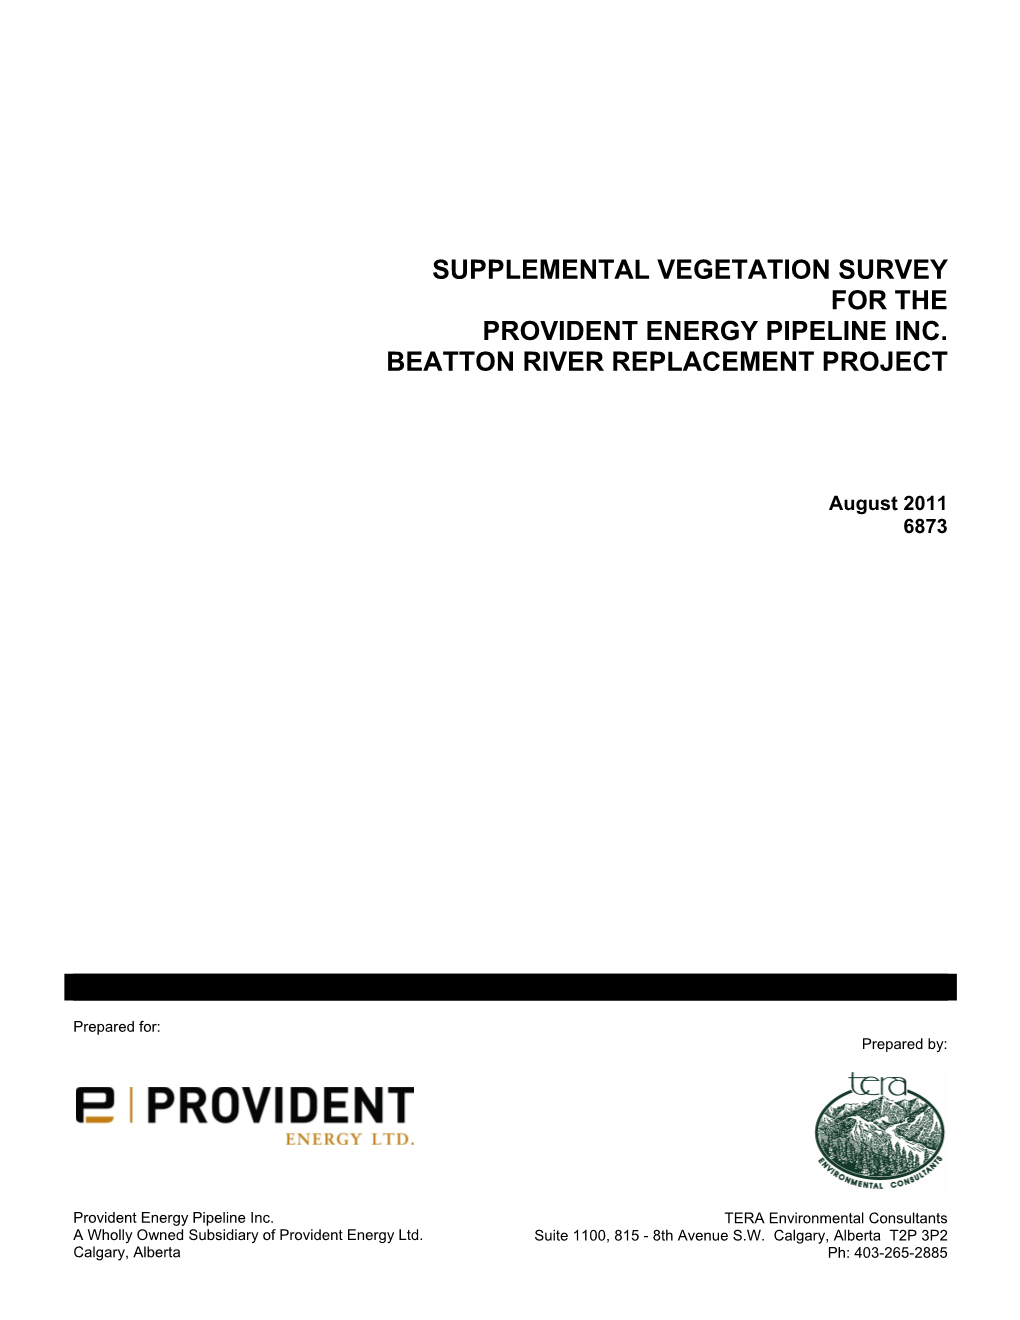 Supplemental Vegetation Survey for the Provident Energy Pipeline Inc